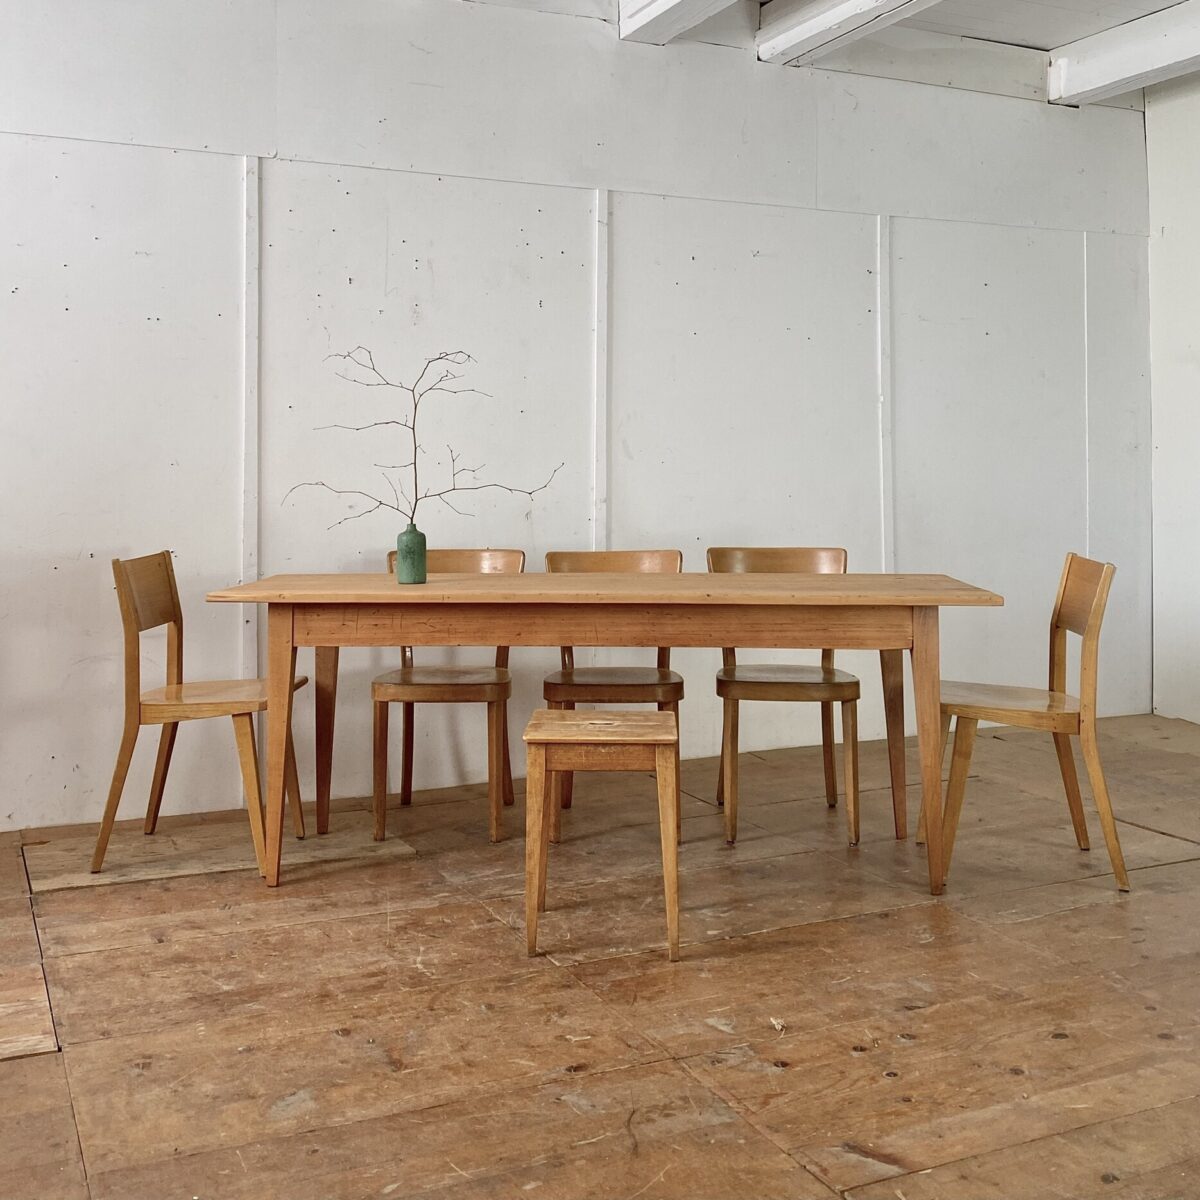 Deuxieme.shop alter Holztisch beizentisch, Tannenholz Biedermeiertisch. 200x69cm Höhe 75cm. Preis pro Tisch. Die Tische sind in stabilem überarbeiteten Zustand, die Holz Oberflächen sind geschliffen und mit Naturöl behandelt. Es finden bis zu 8 Personen daran Platz. 